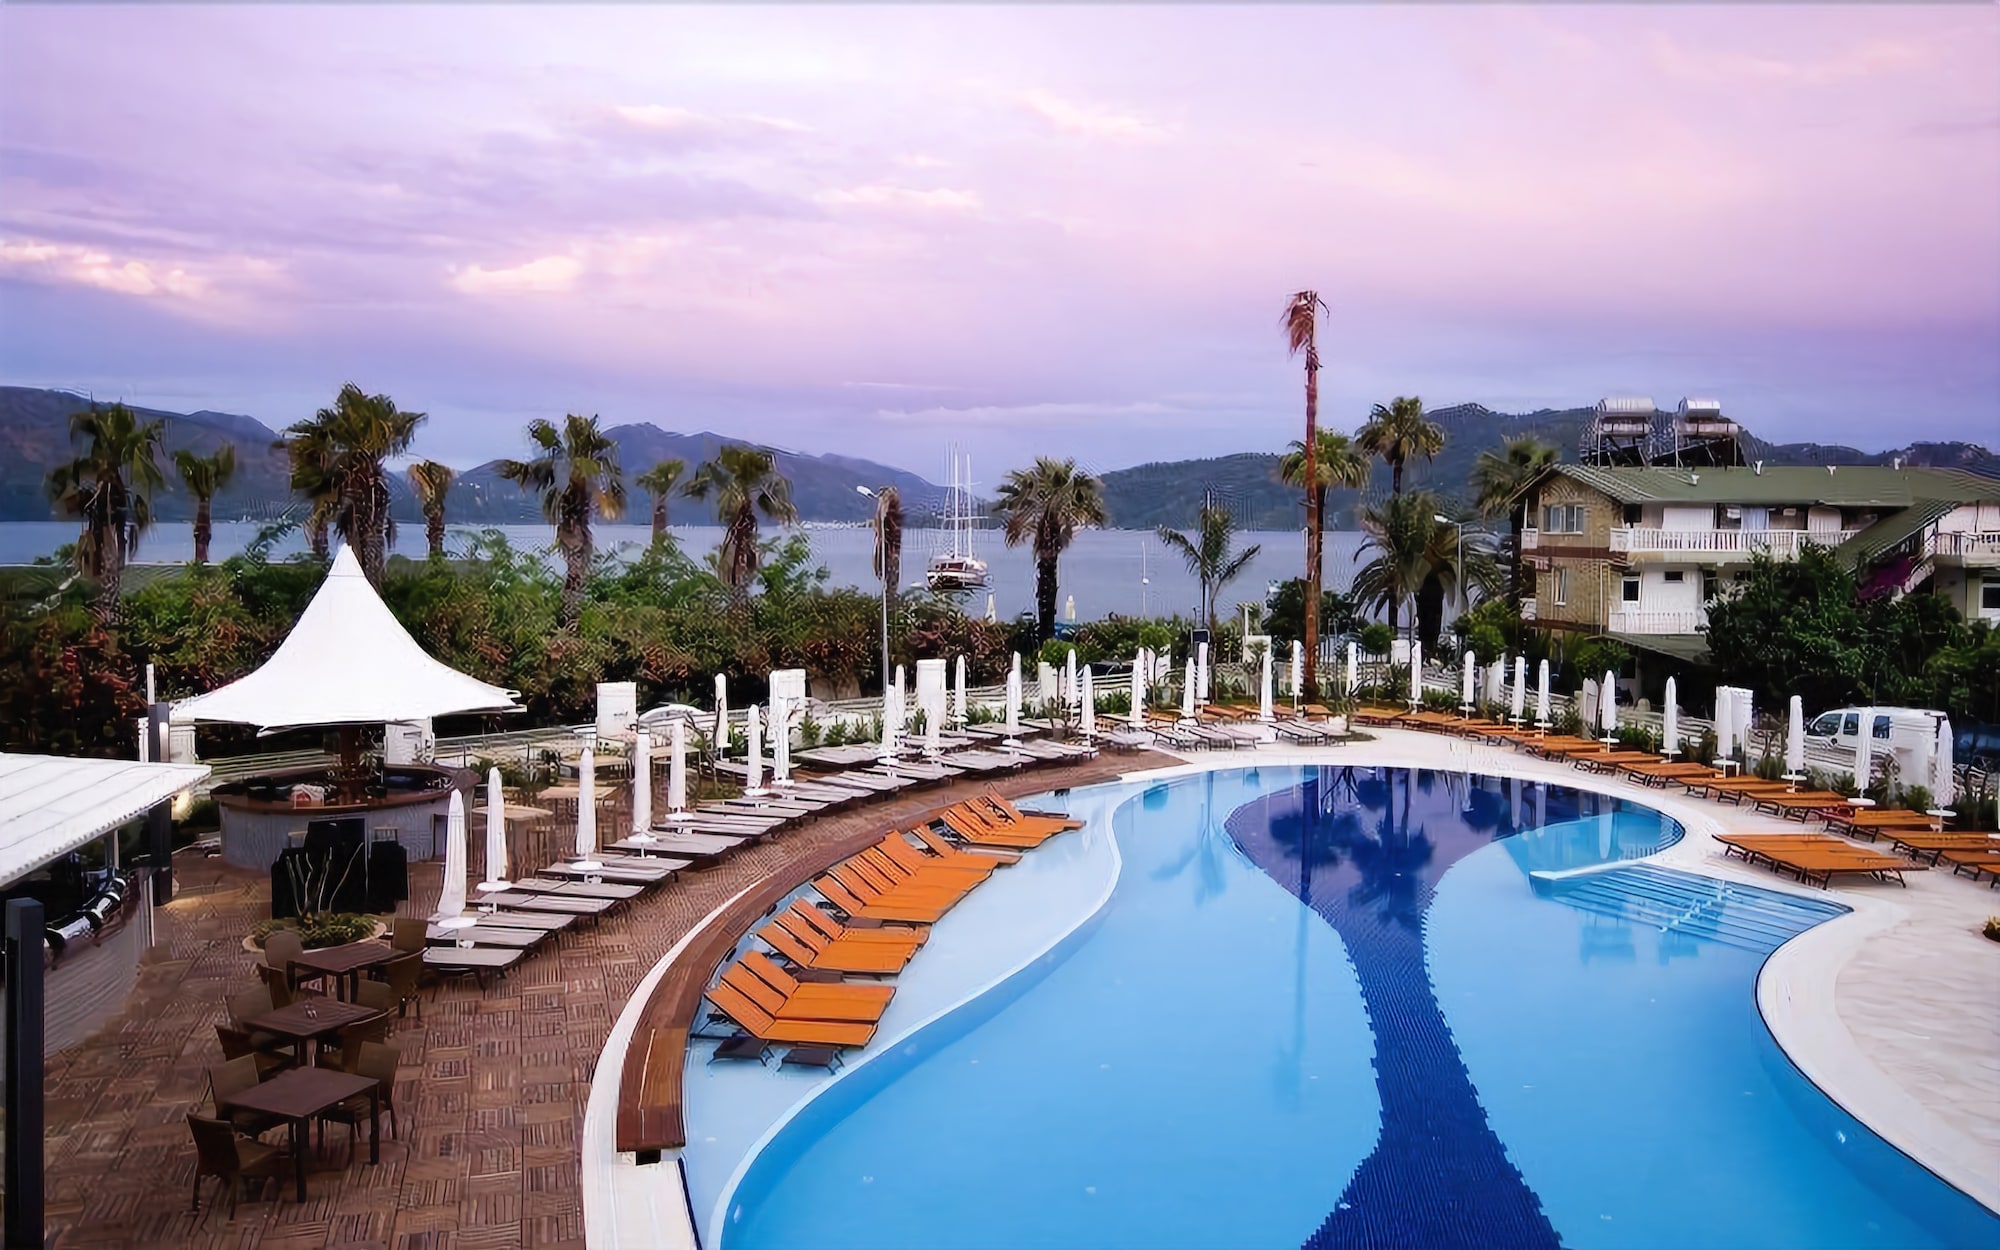 Casa de Maris Spa & Resort Hotel - All Inclusive